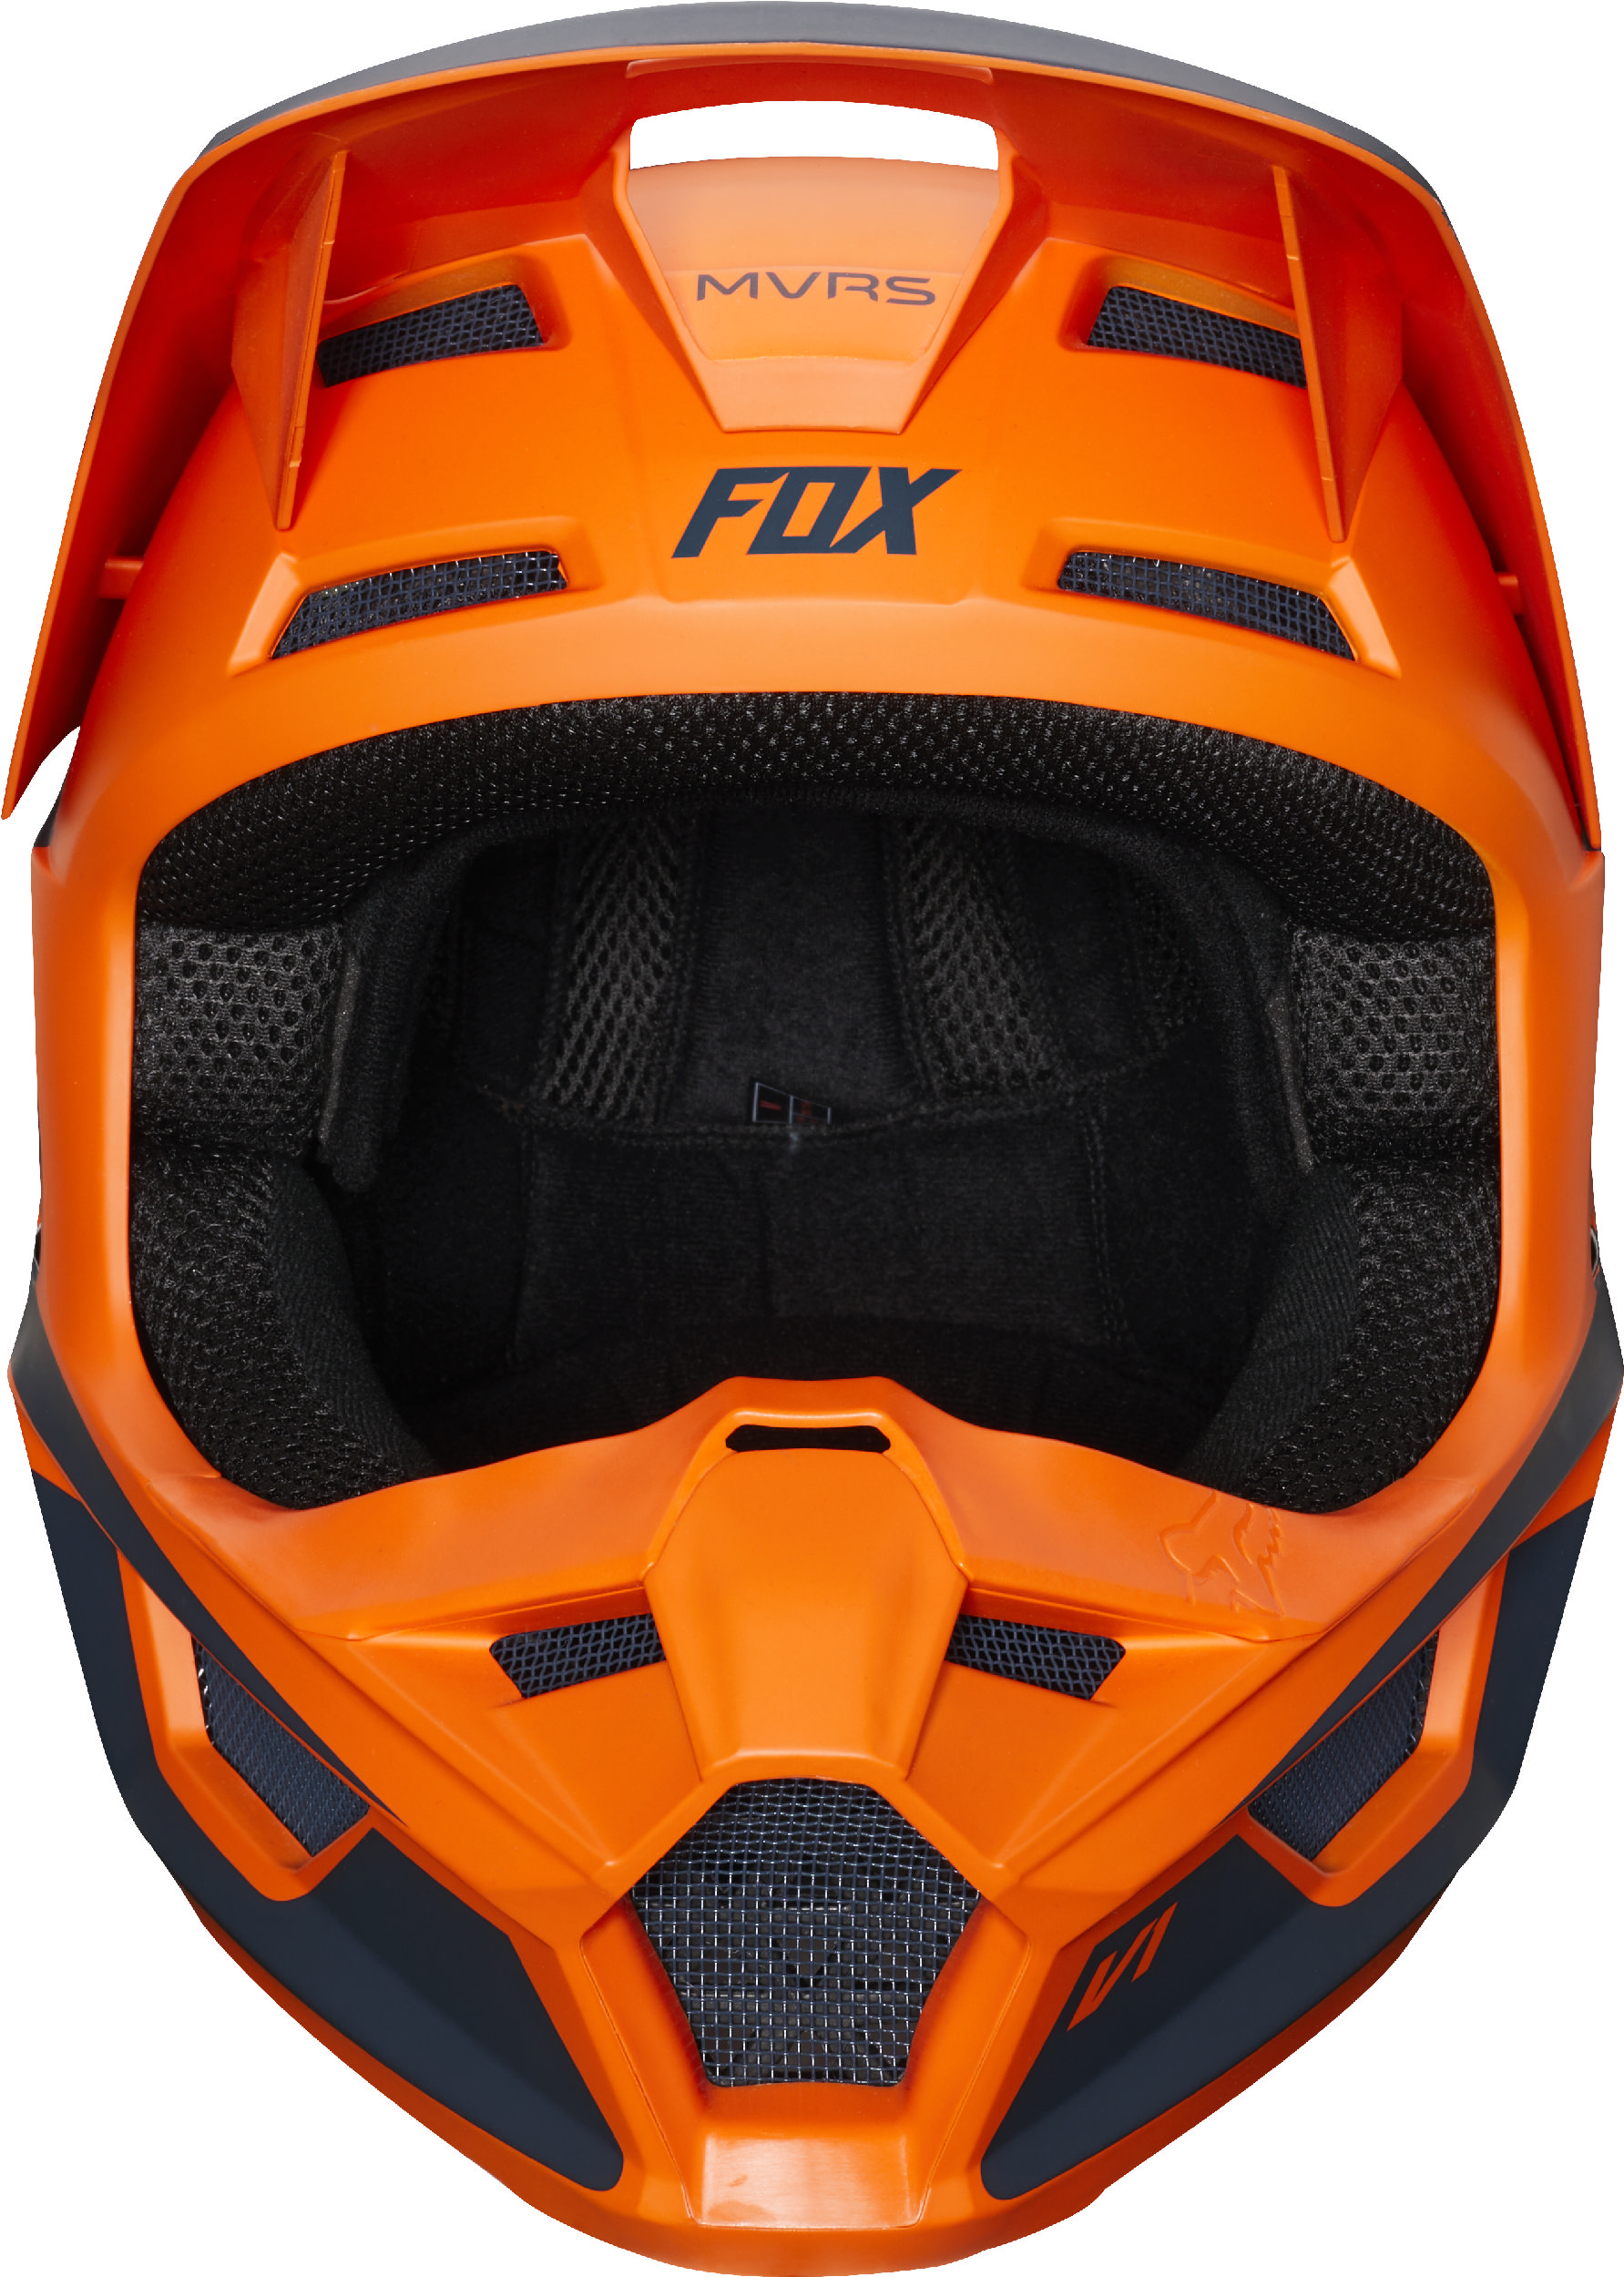 Fox Racing Adult V1 Przm Orange Dirt Bike Helmet Motocross ATV UTV | eBay